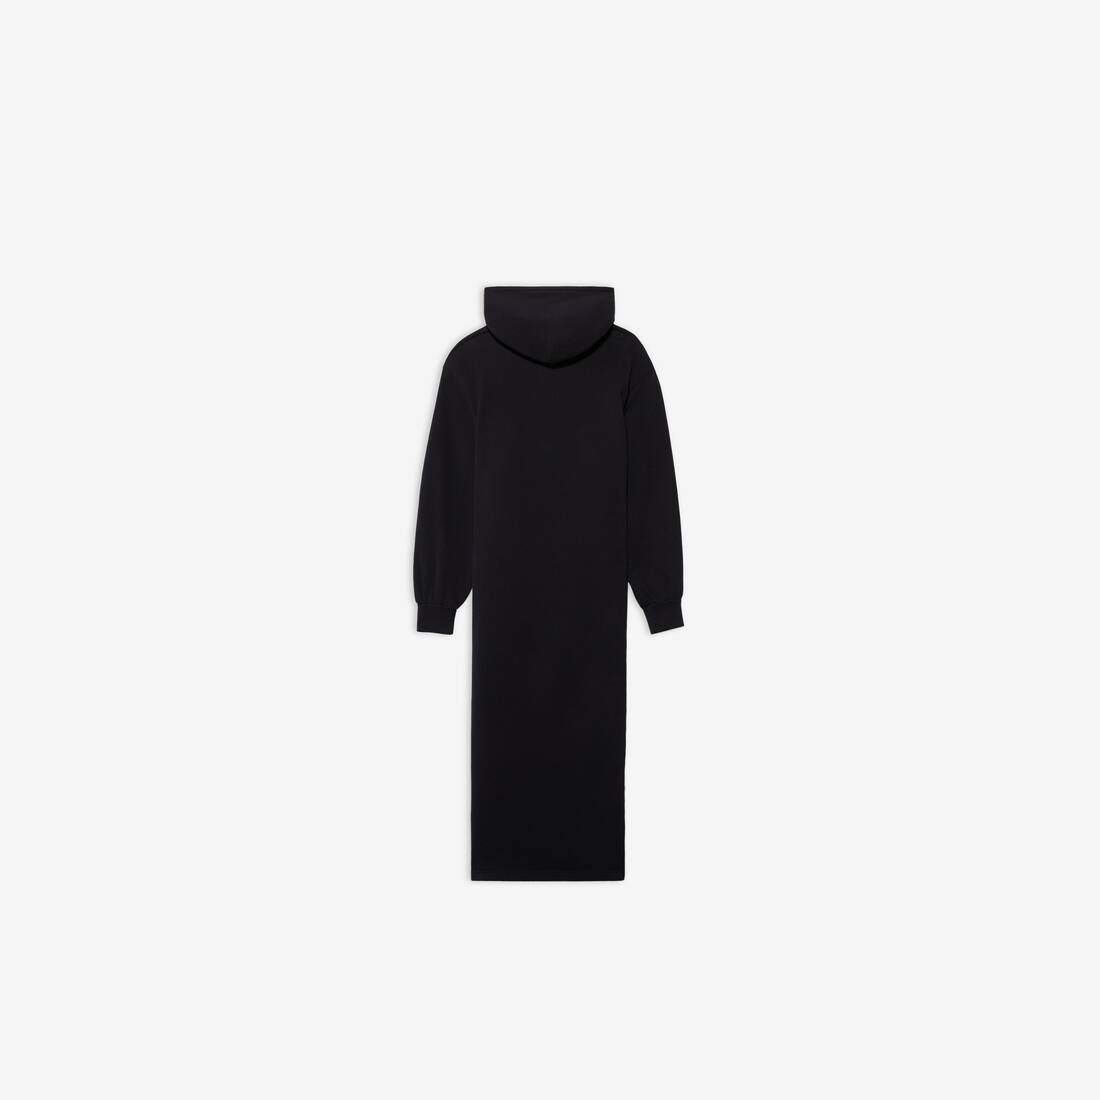 Women's Easywrap Hooded Dress in Black